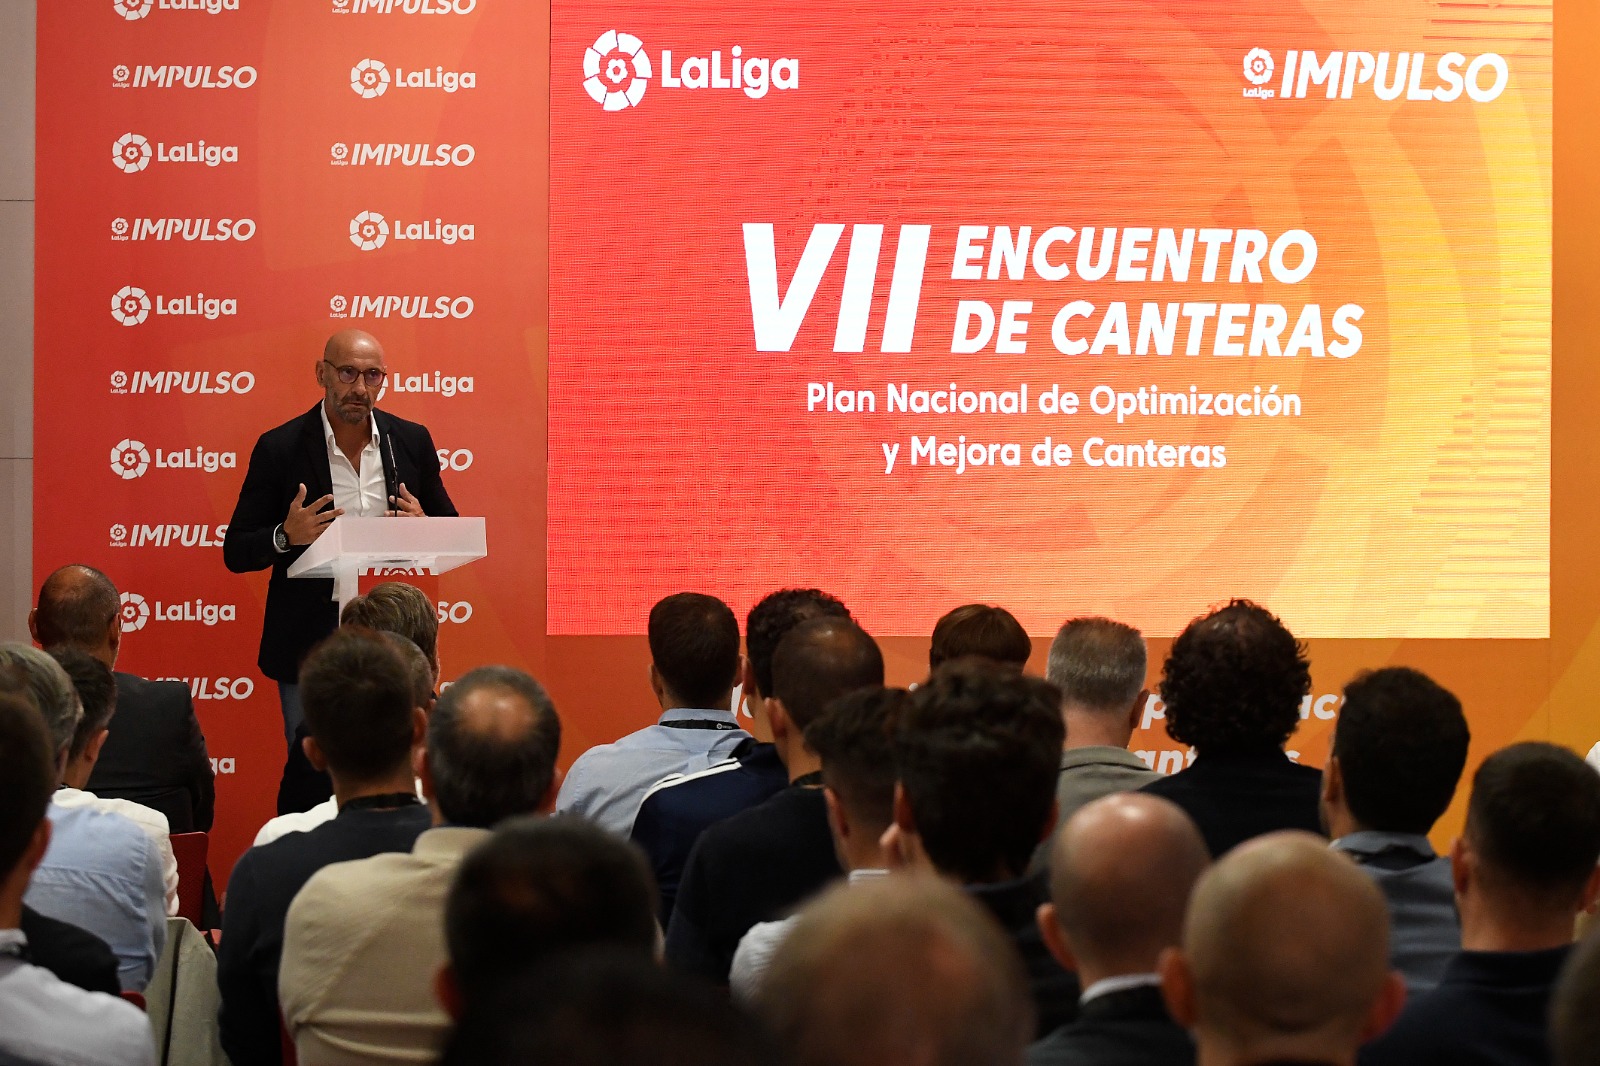 El encuentro de canteras finaliza con la exposición del pionero modelo tecnológico del Sevilla FC